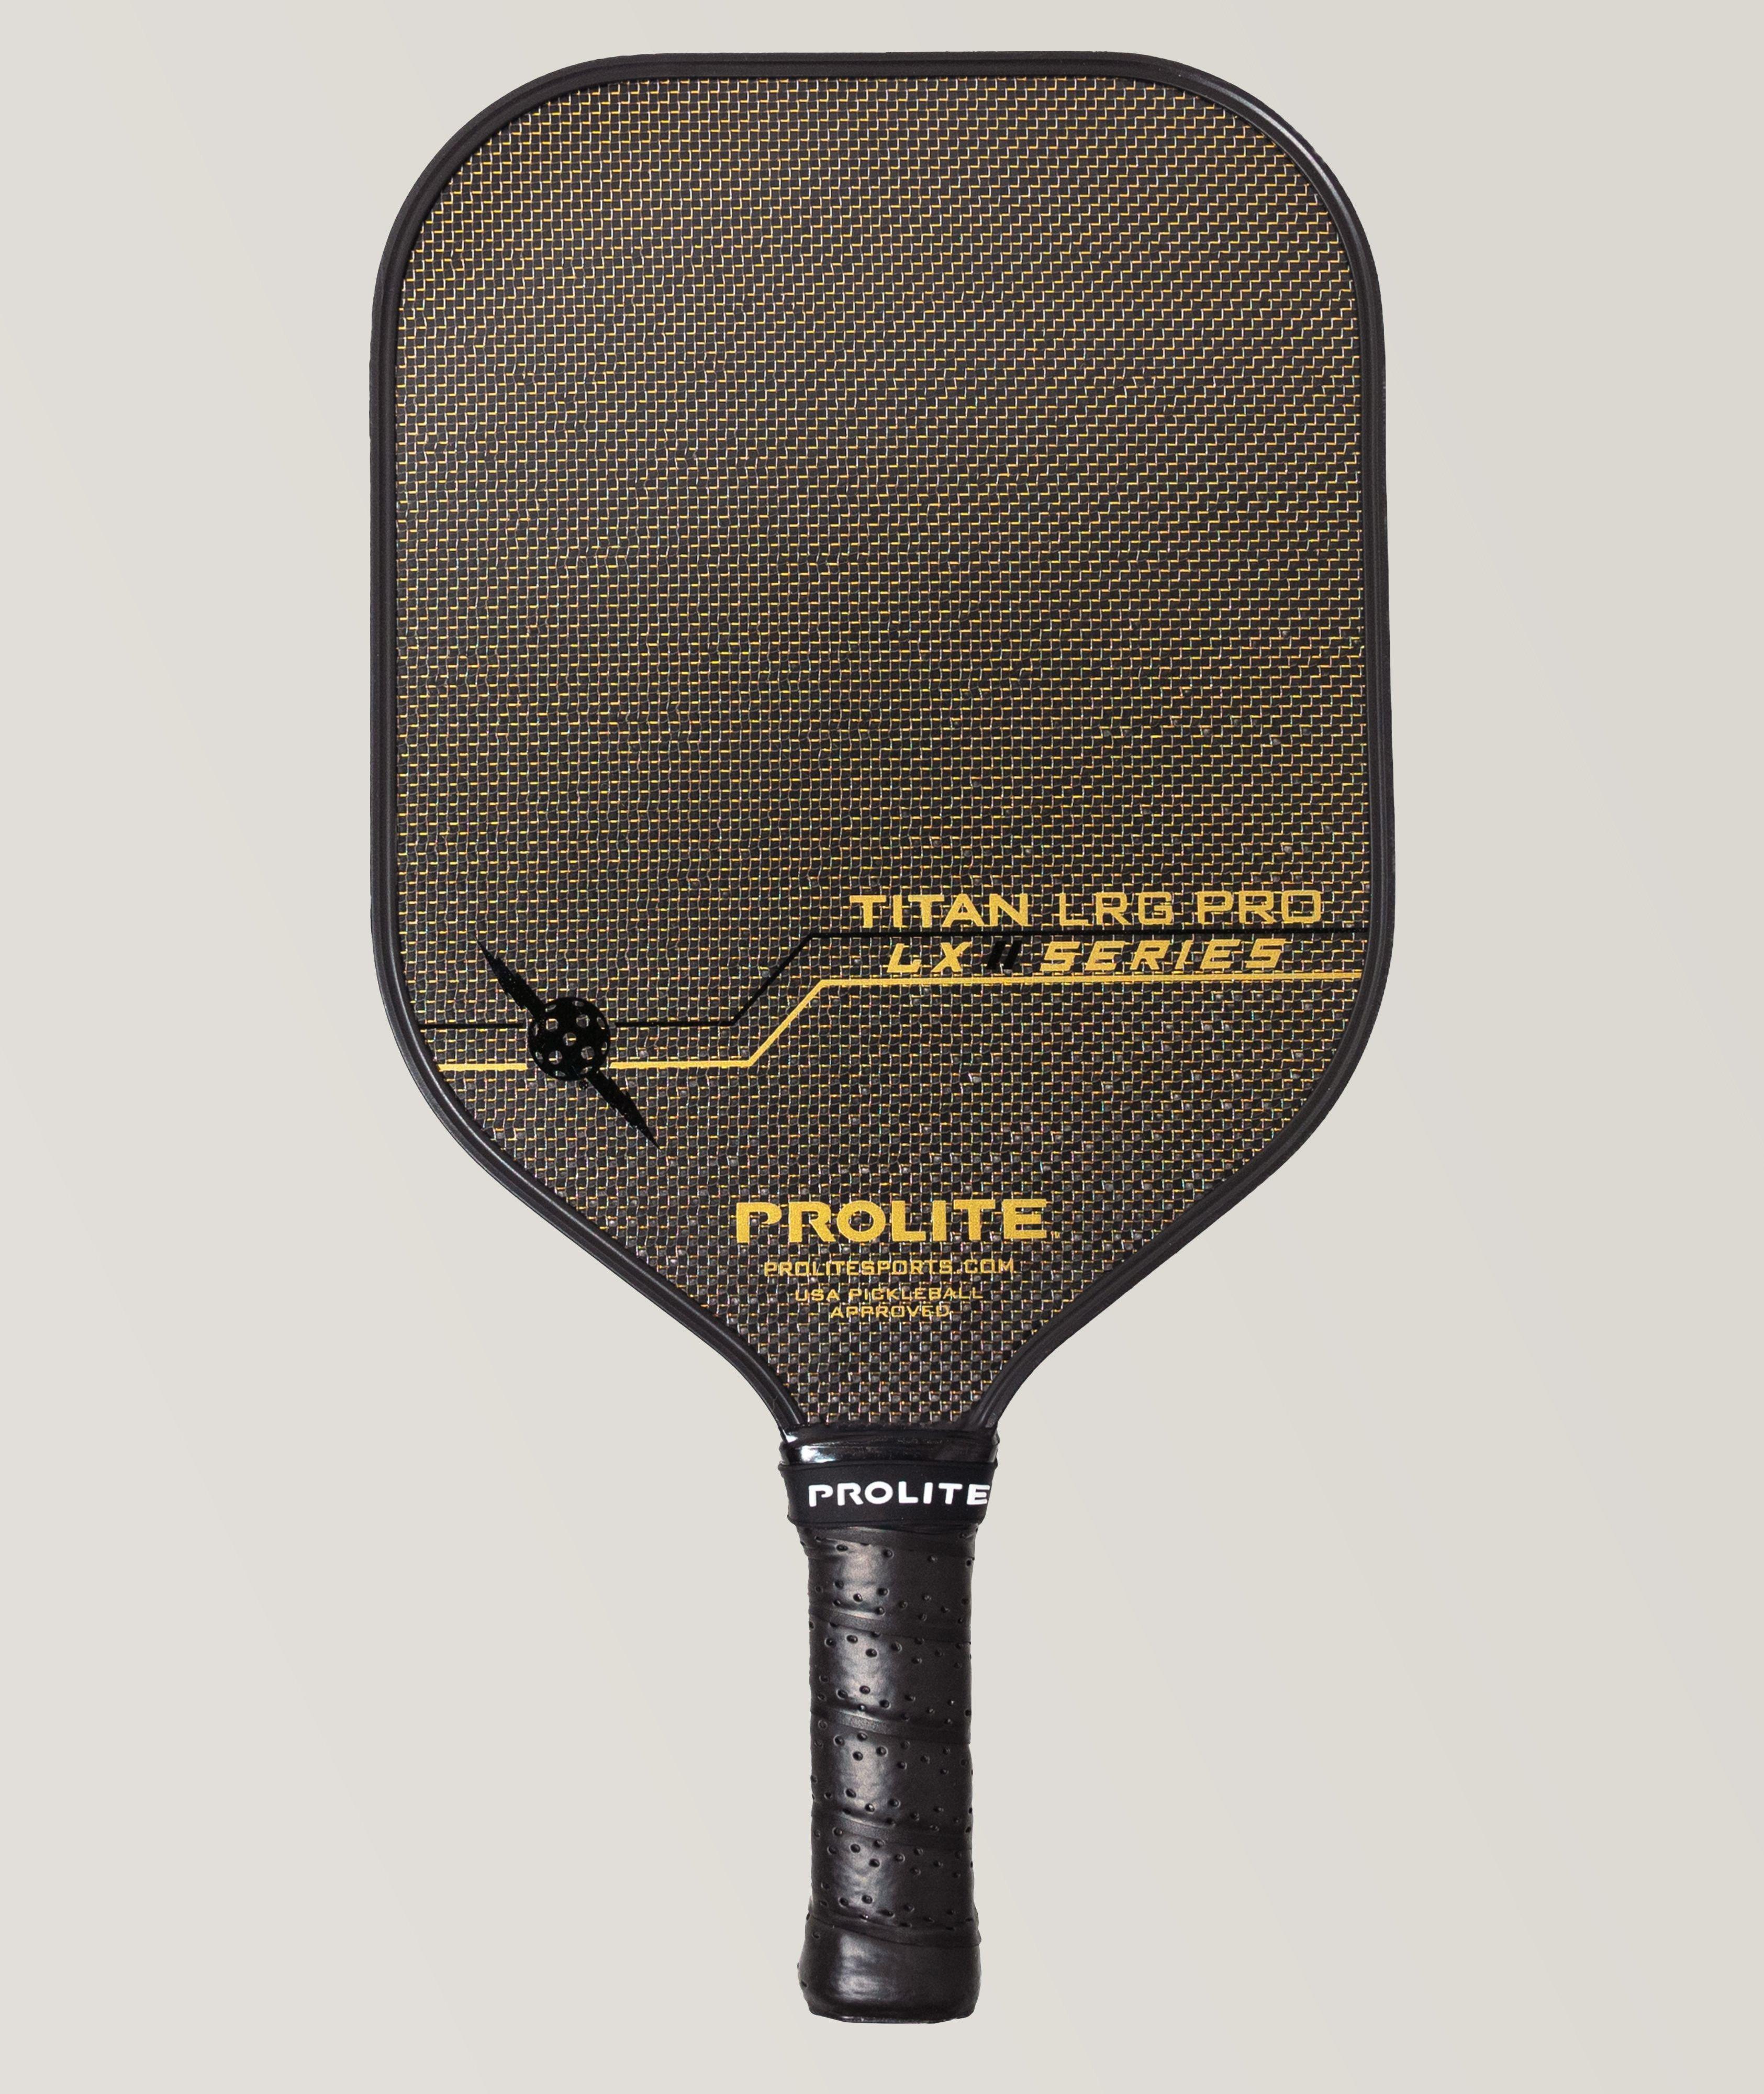 Titan LRG Pro LX Paddle